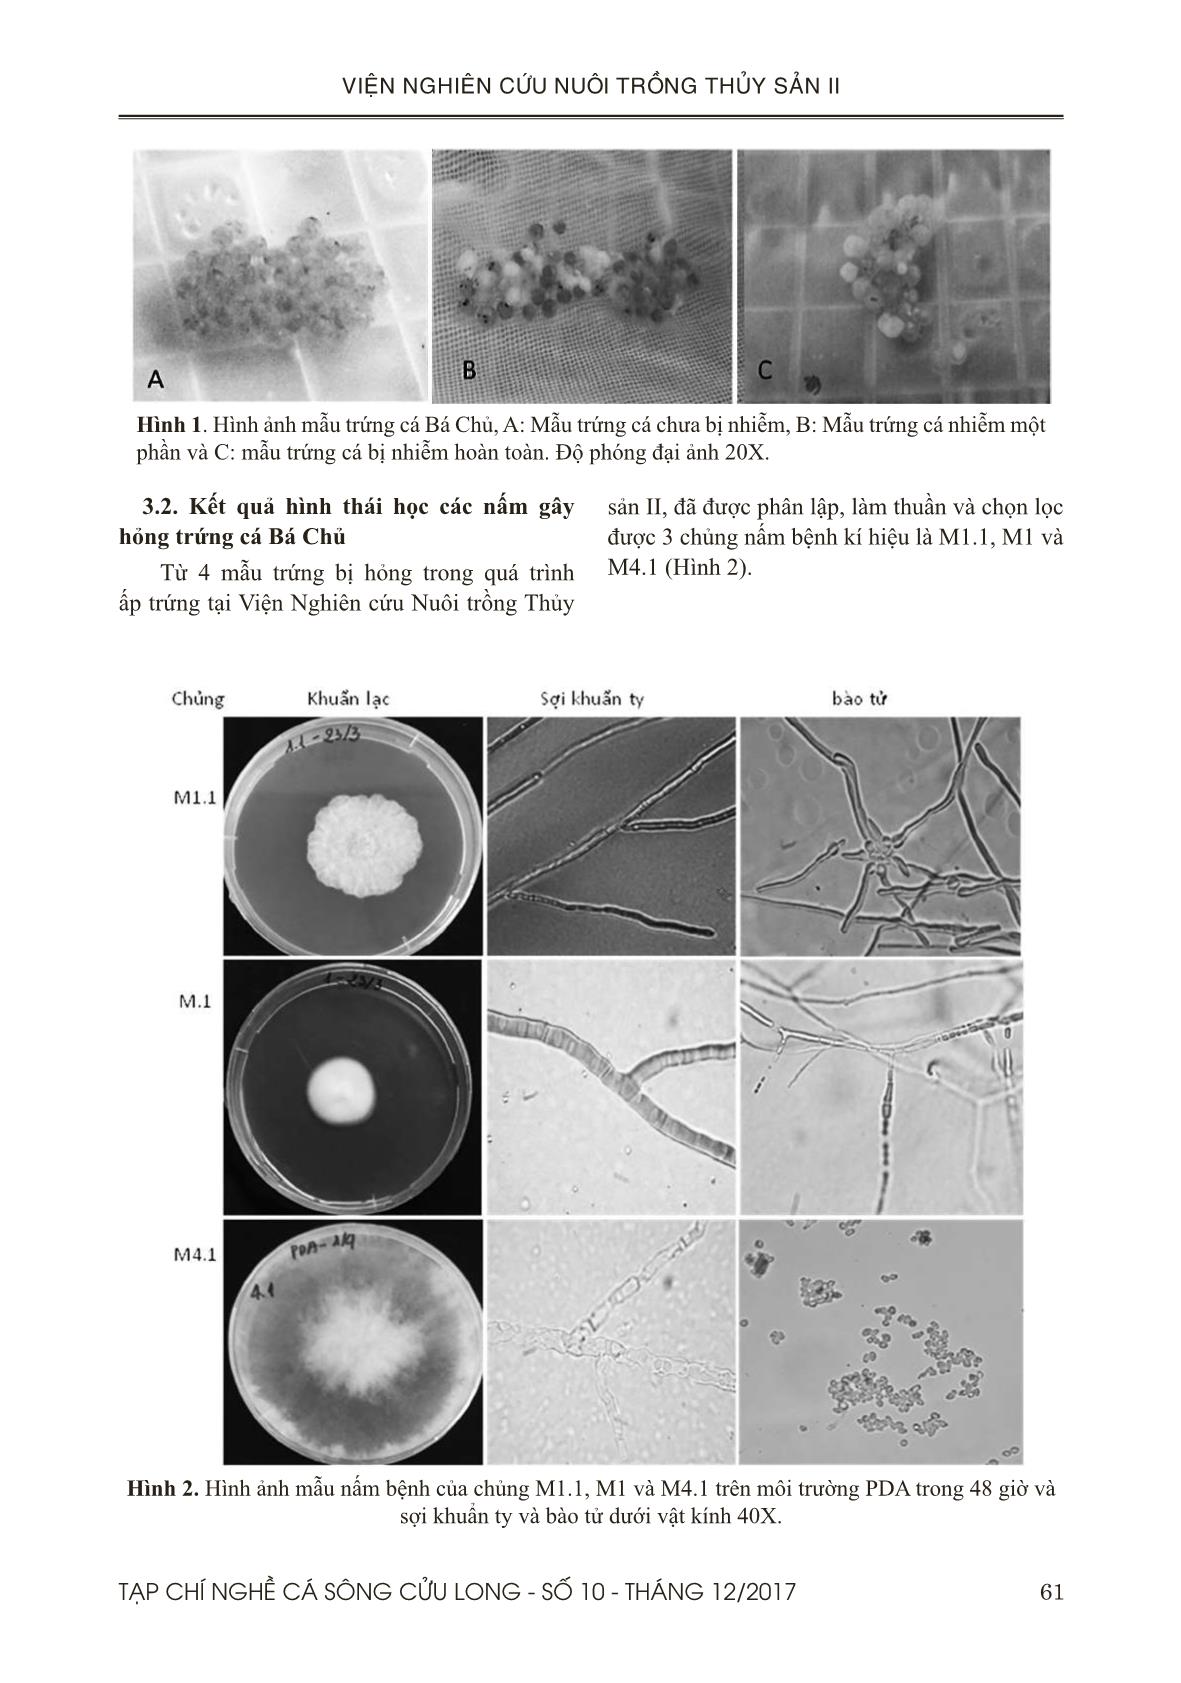 Xác định một số nấm gây bệnh trên trứng cá bá chủ (pterapogon kauderni) trong quá trình ấp bằng phương pháp pcr và sem trang 4